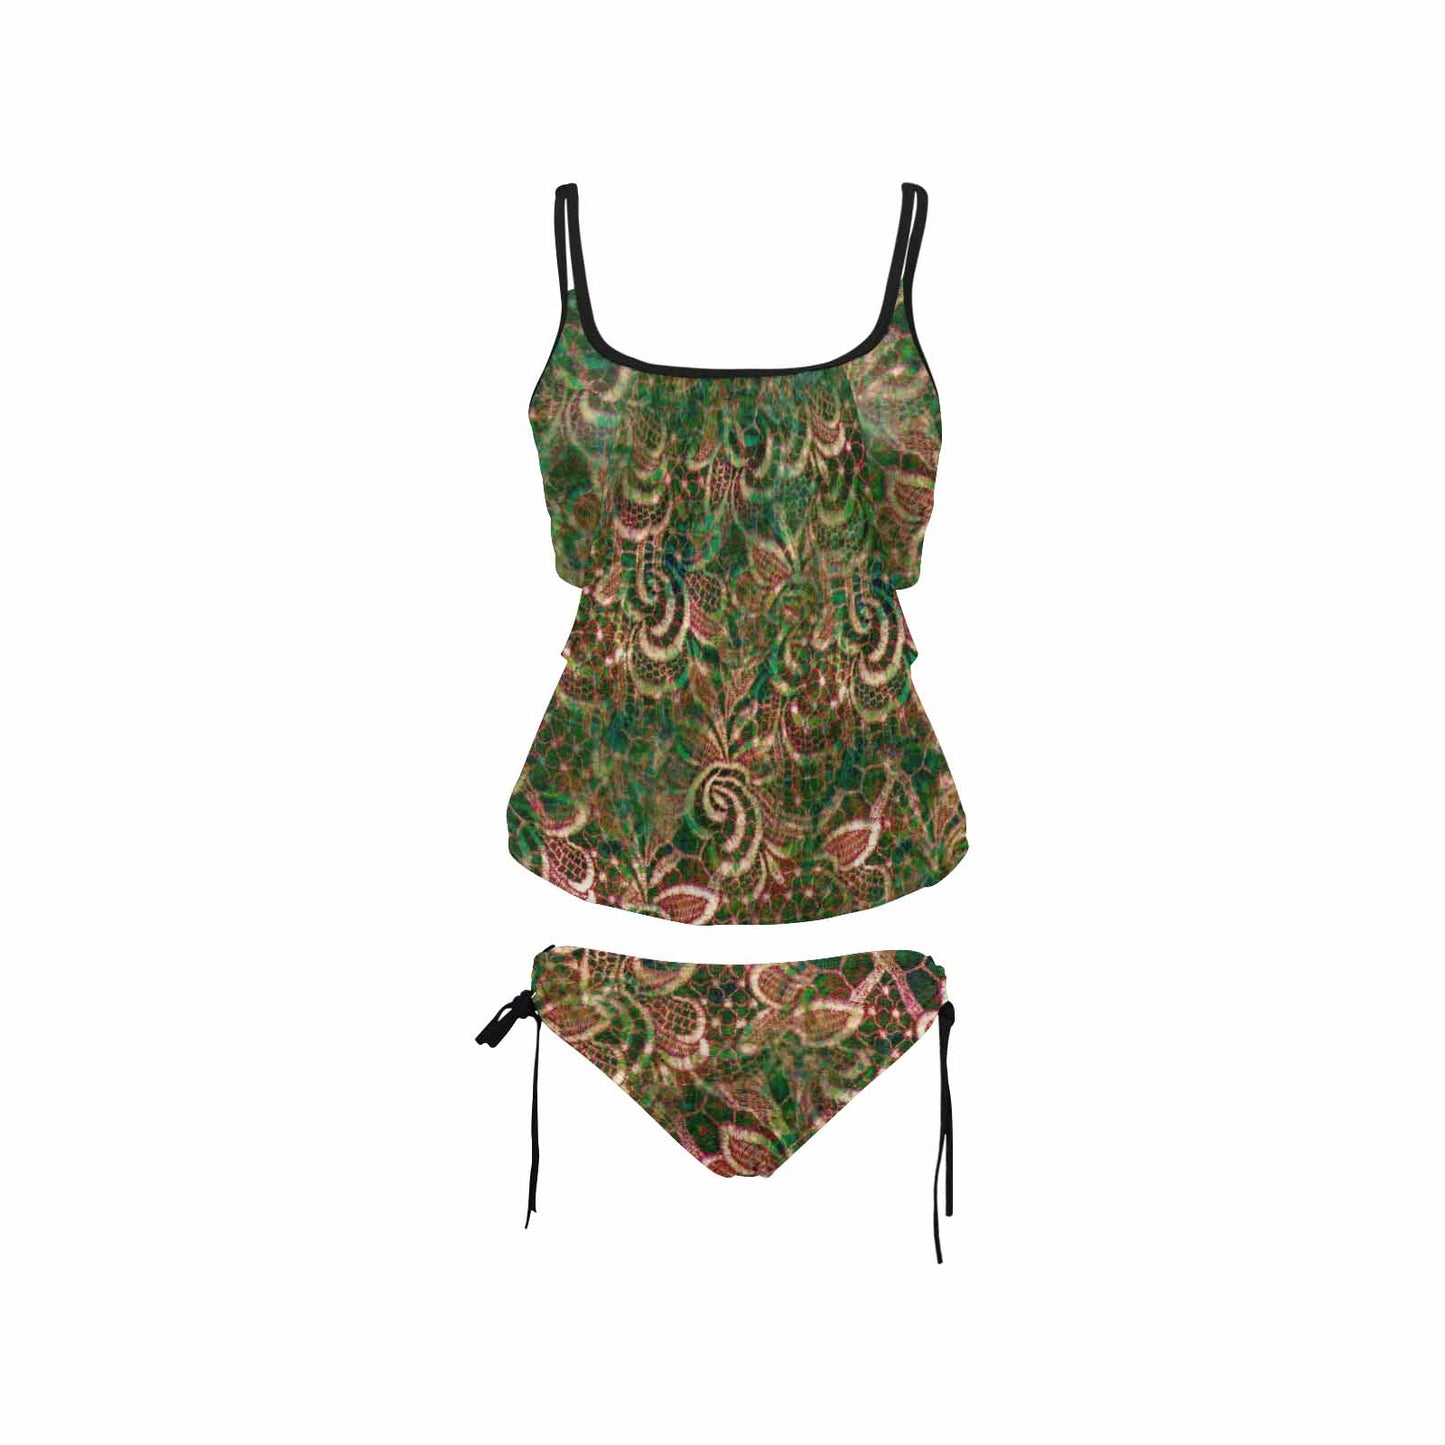 Tankini cover belly swim wear, Printed Victorian lace design 34